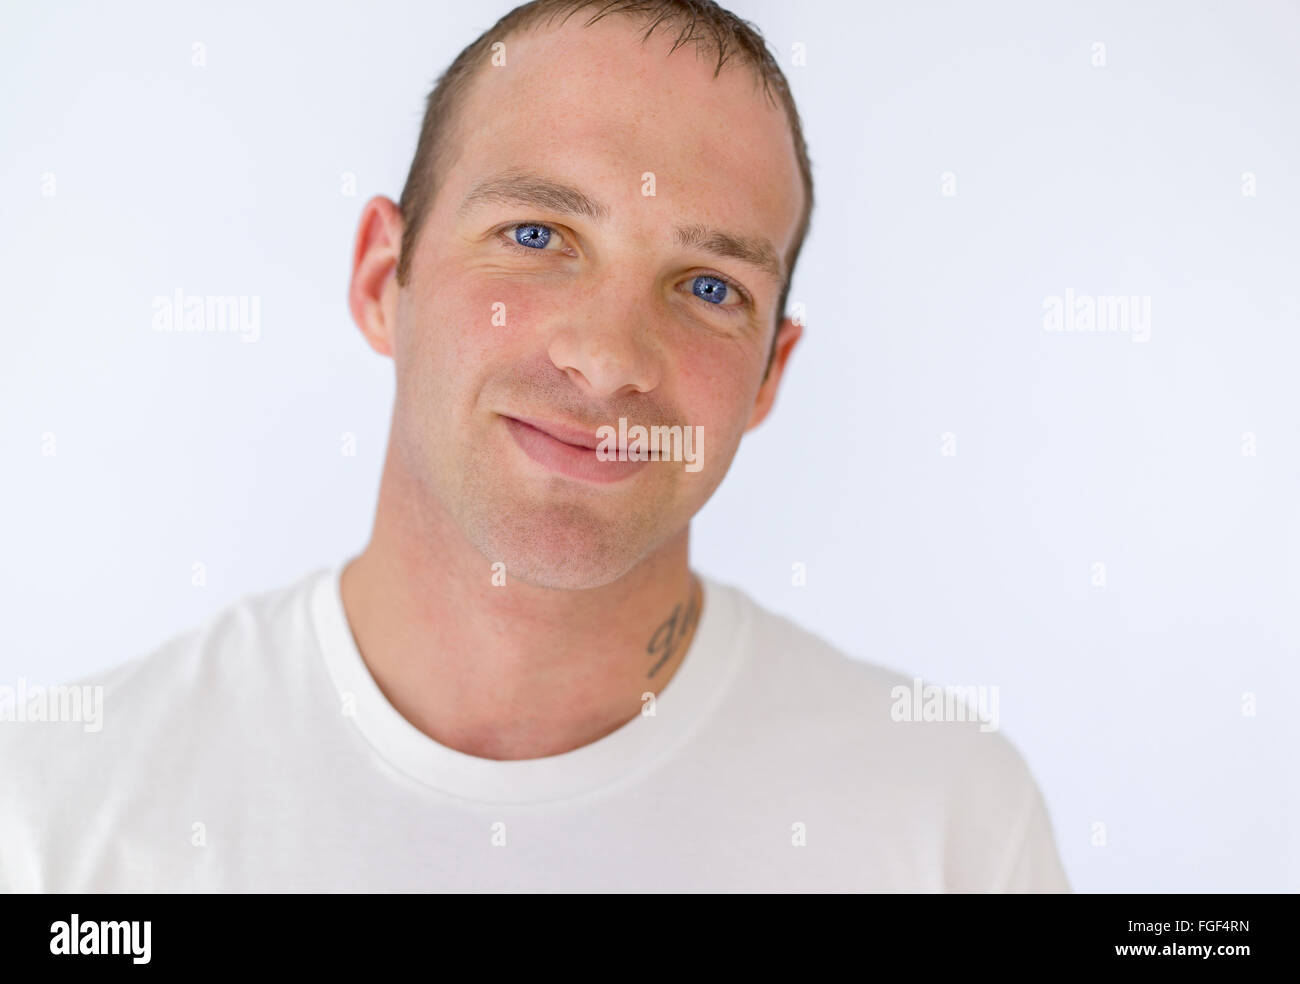 Portrait d'un homme portant un t-shirt blanc smiling Banque D'Images